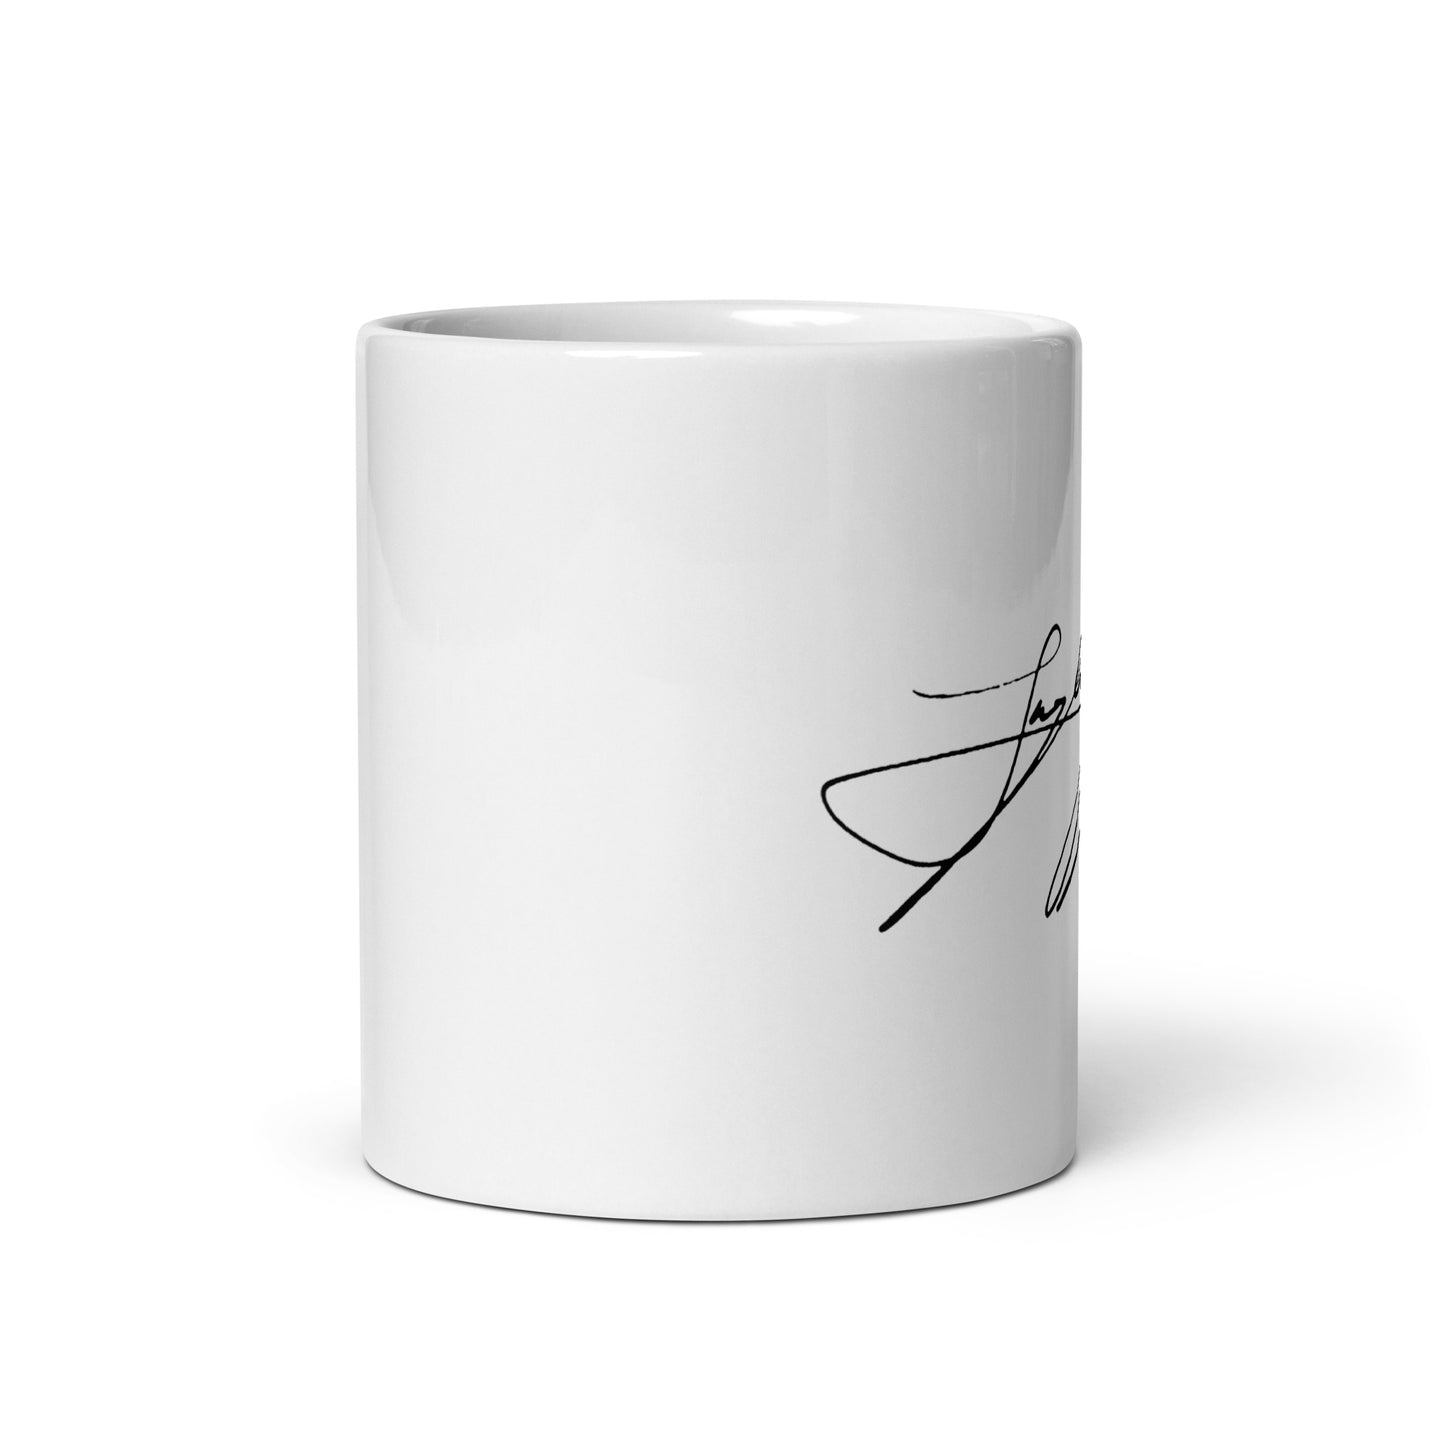 BTS Jungkook, Jeon Jung-kook Signature Ceramic Mug